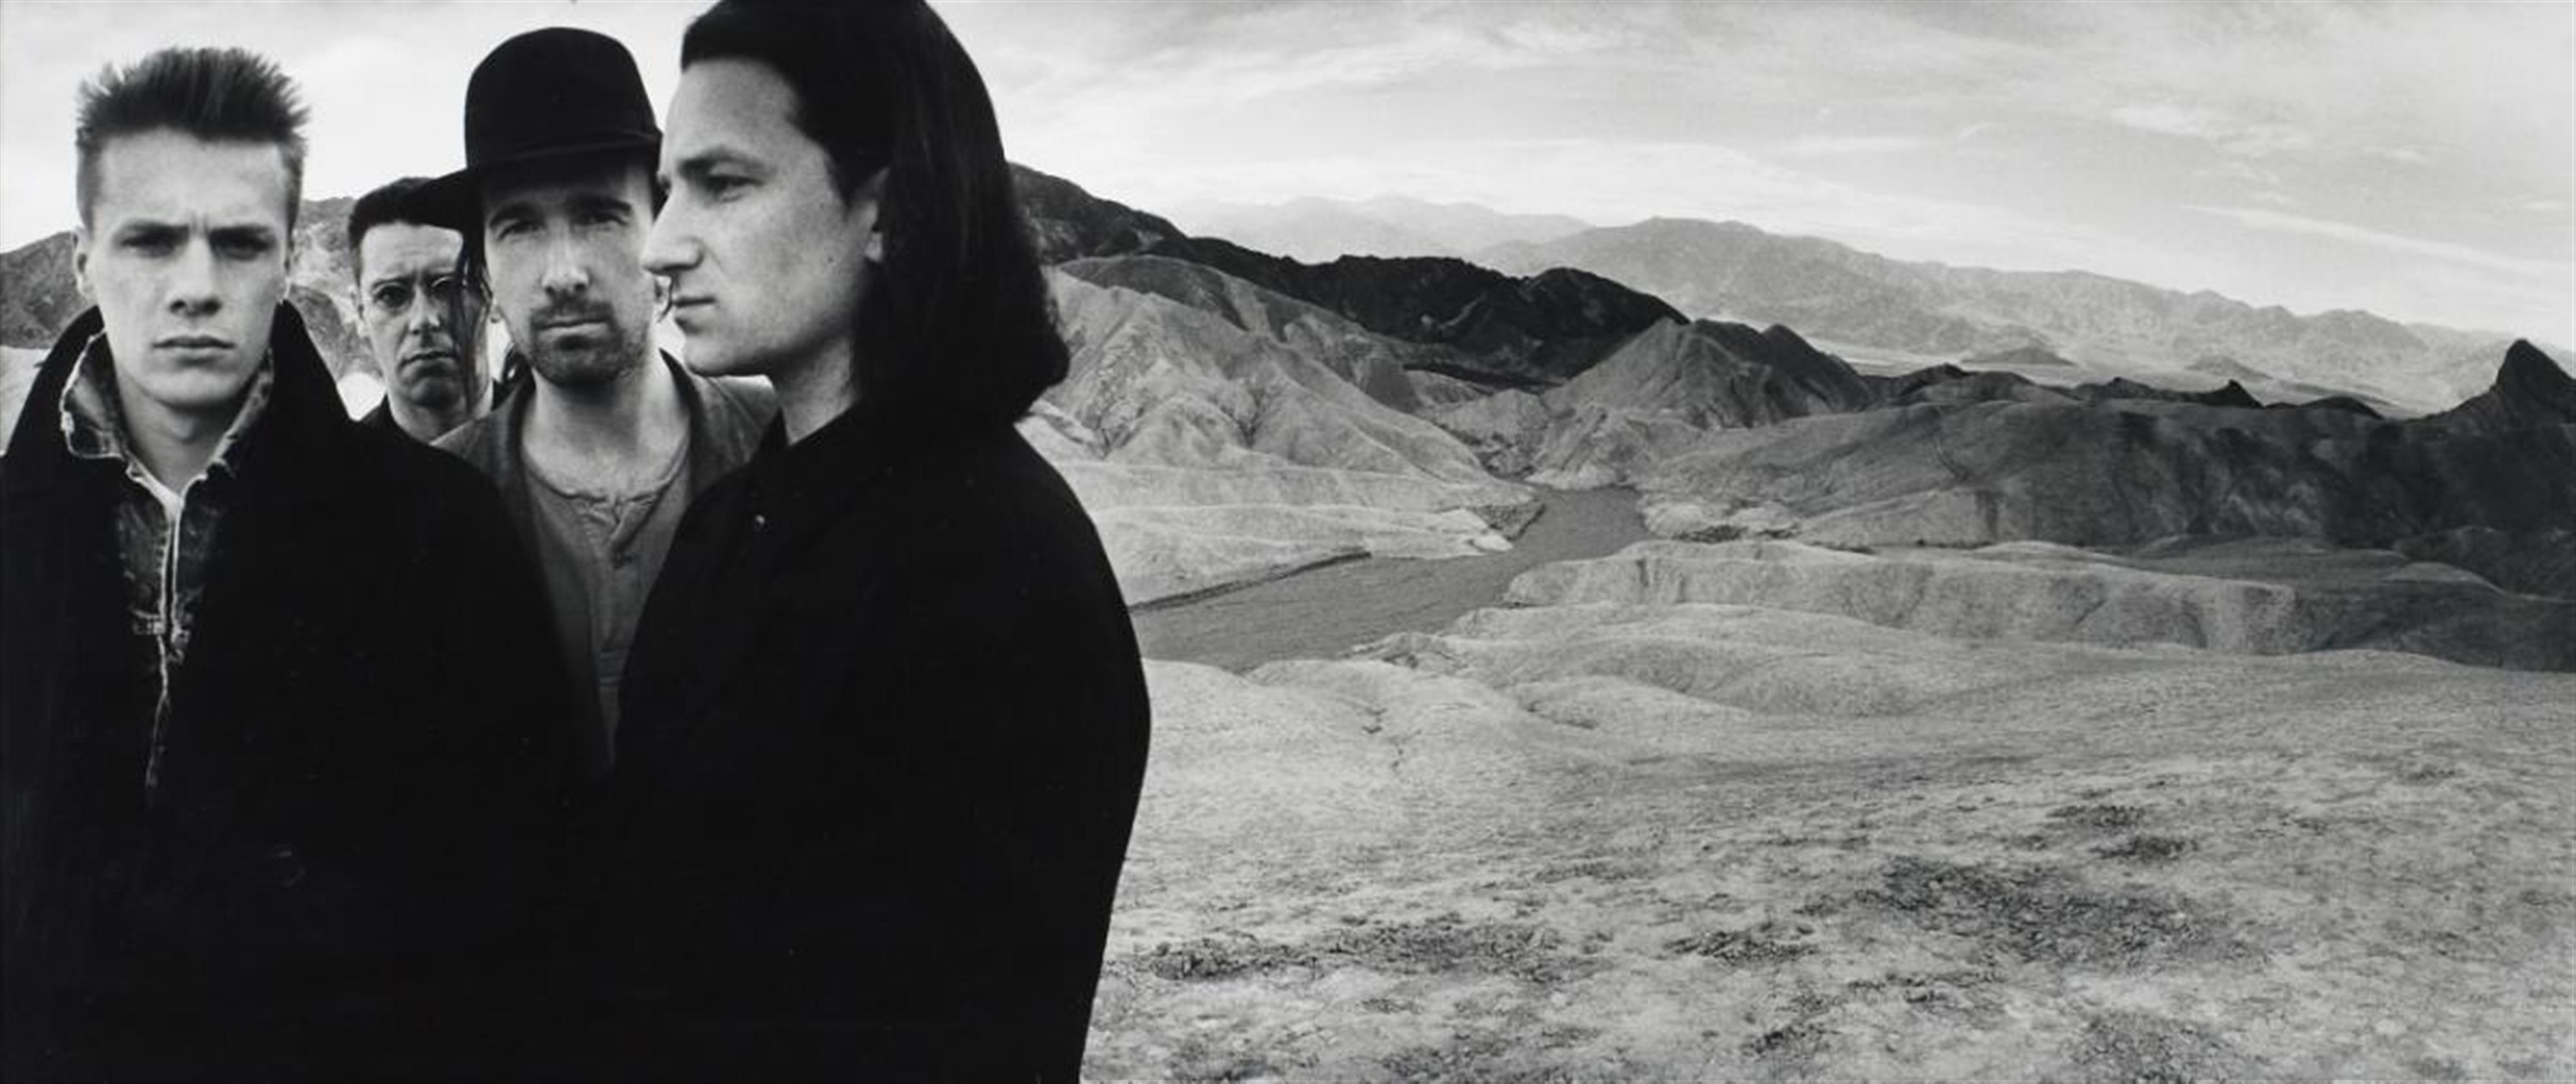 Anton Corbijn - U2, Death Valley - image-1